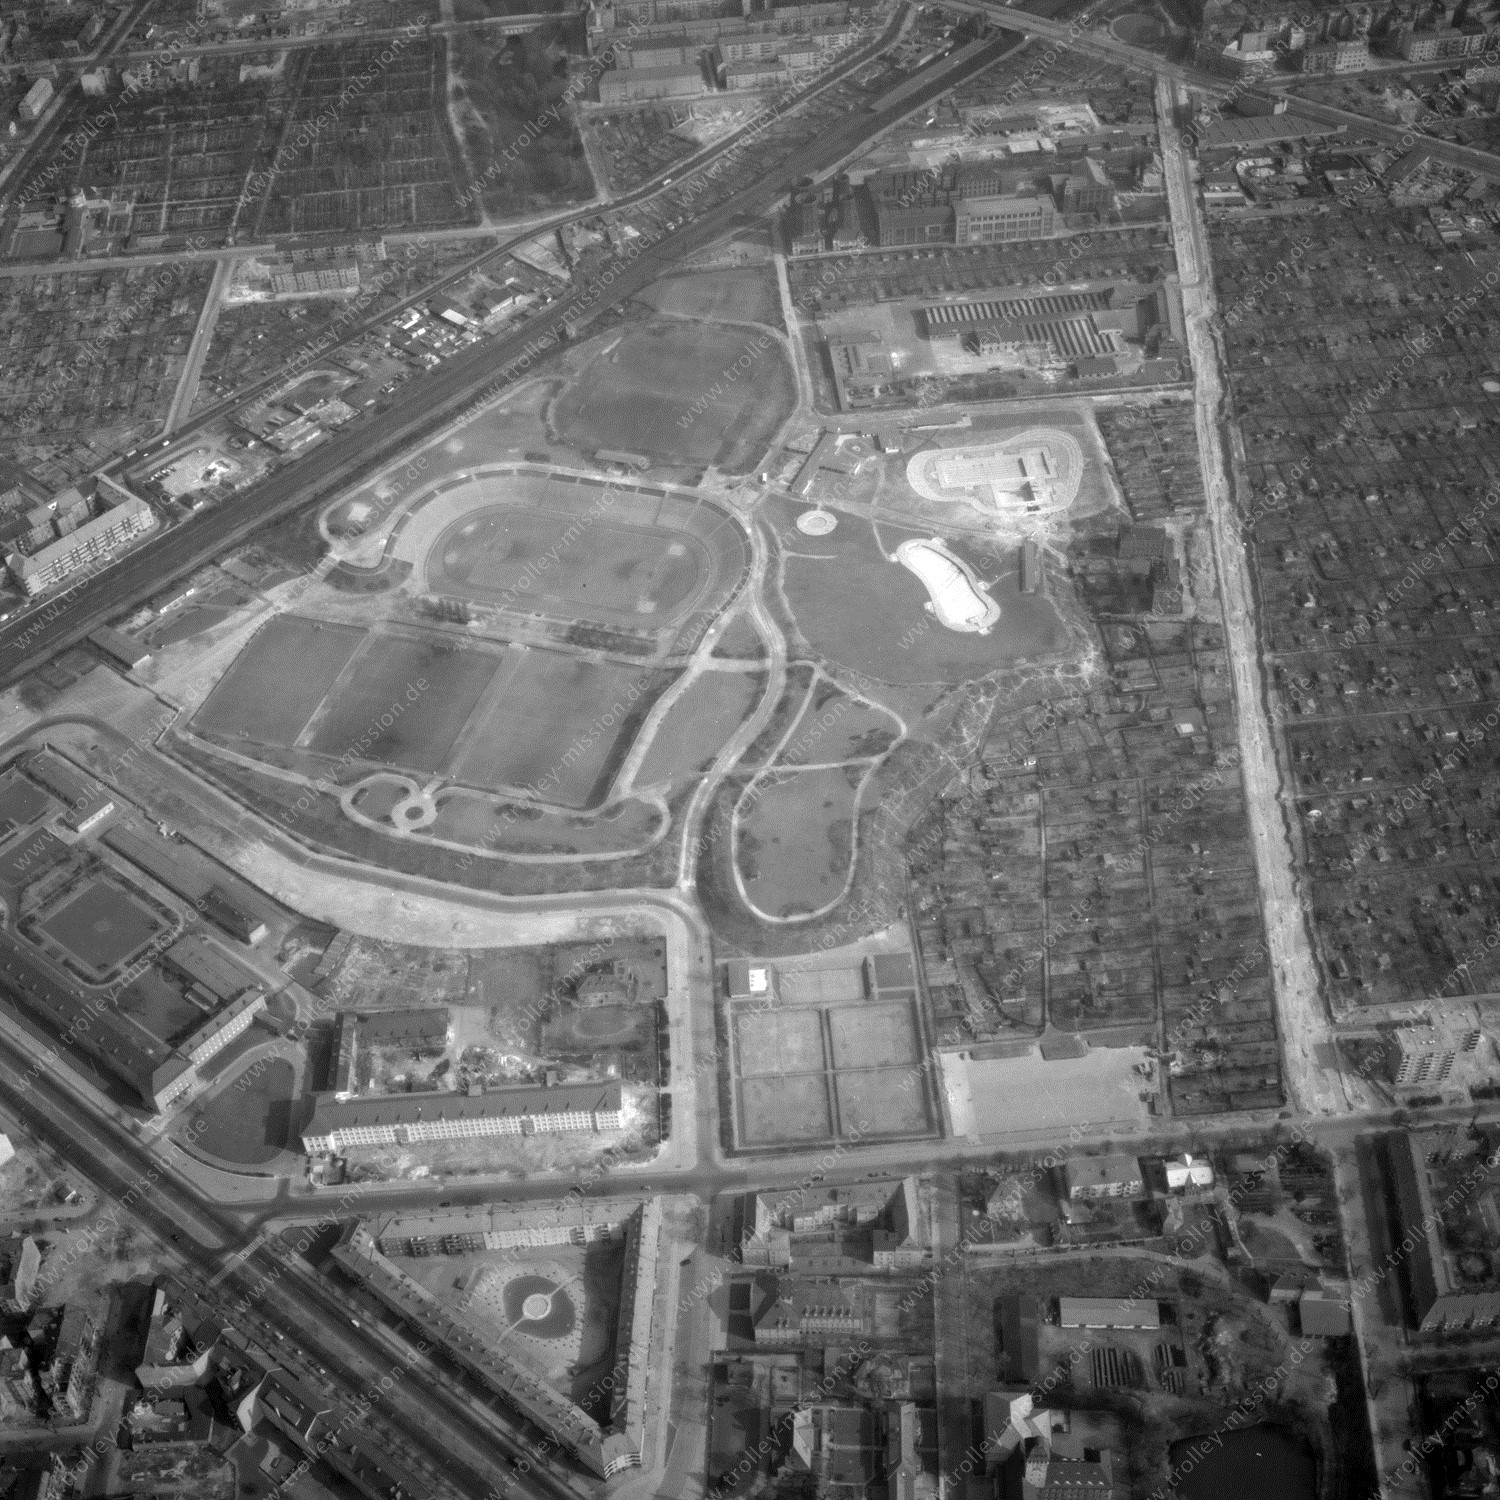 Alte Fotos und Luftbilder von Berlin - Luftbildaufnahme Nr. 02 - Historische Luftaufnahmen von West-Berlin aus dem Jahr 1954 - Flugstrecke Bravo